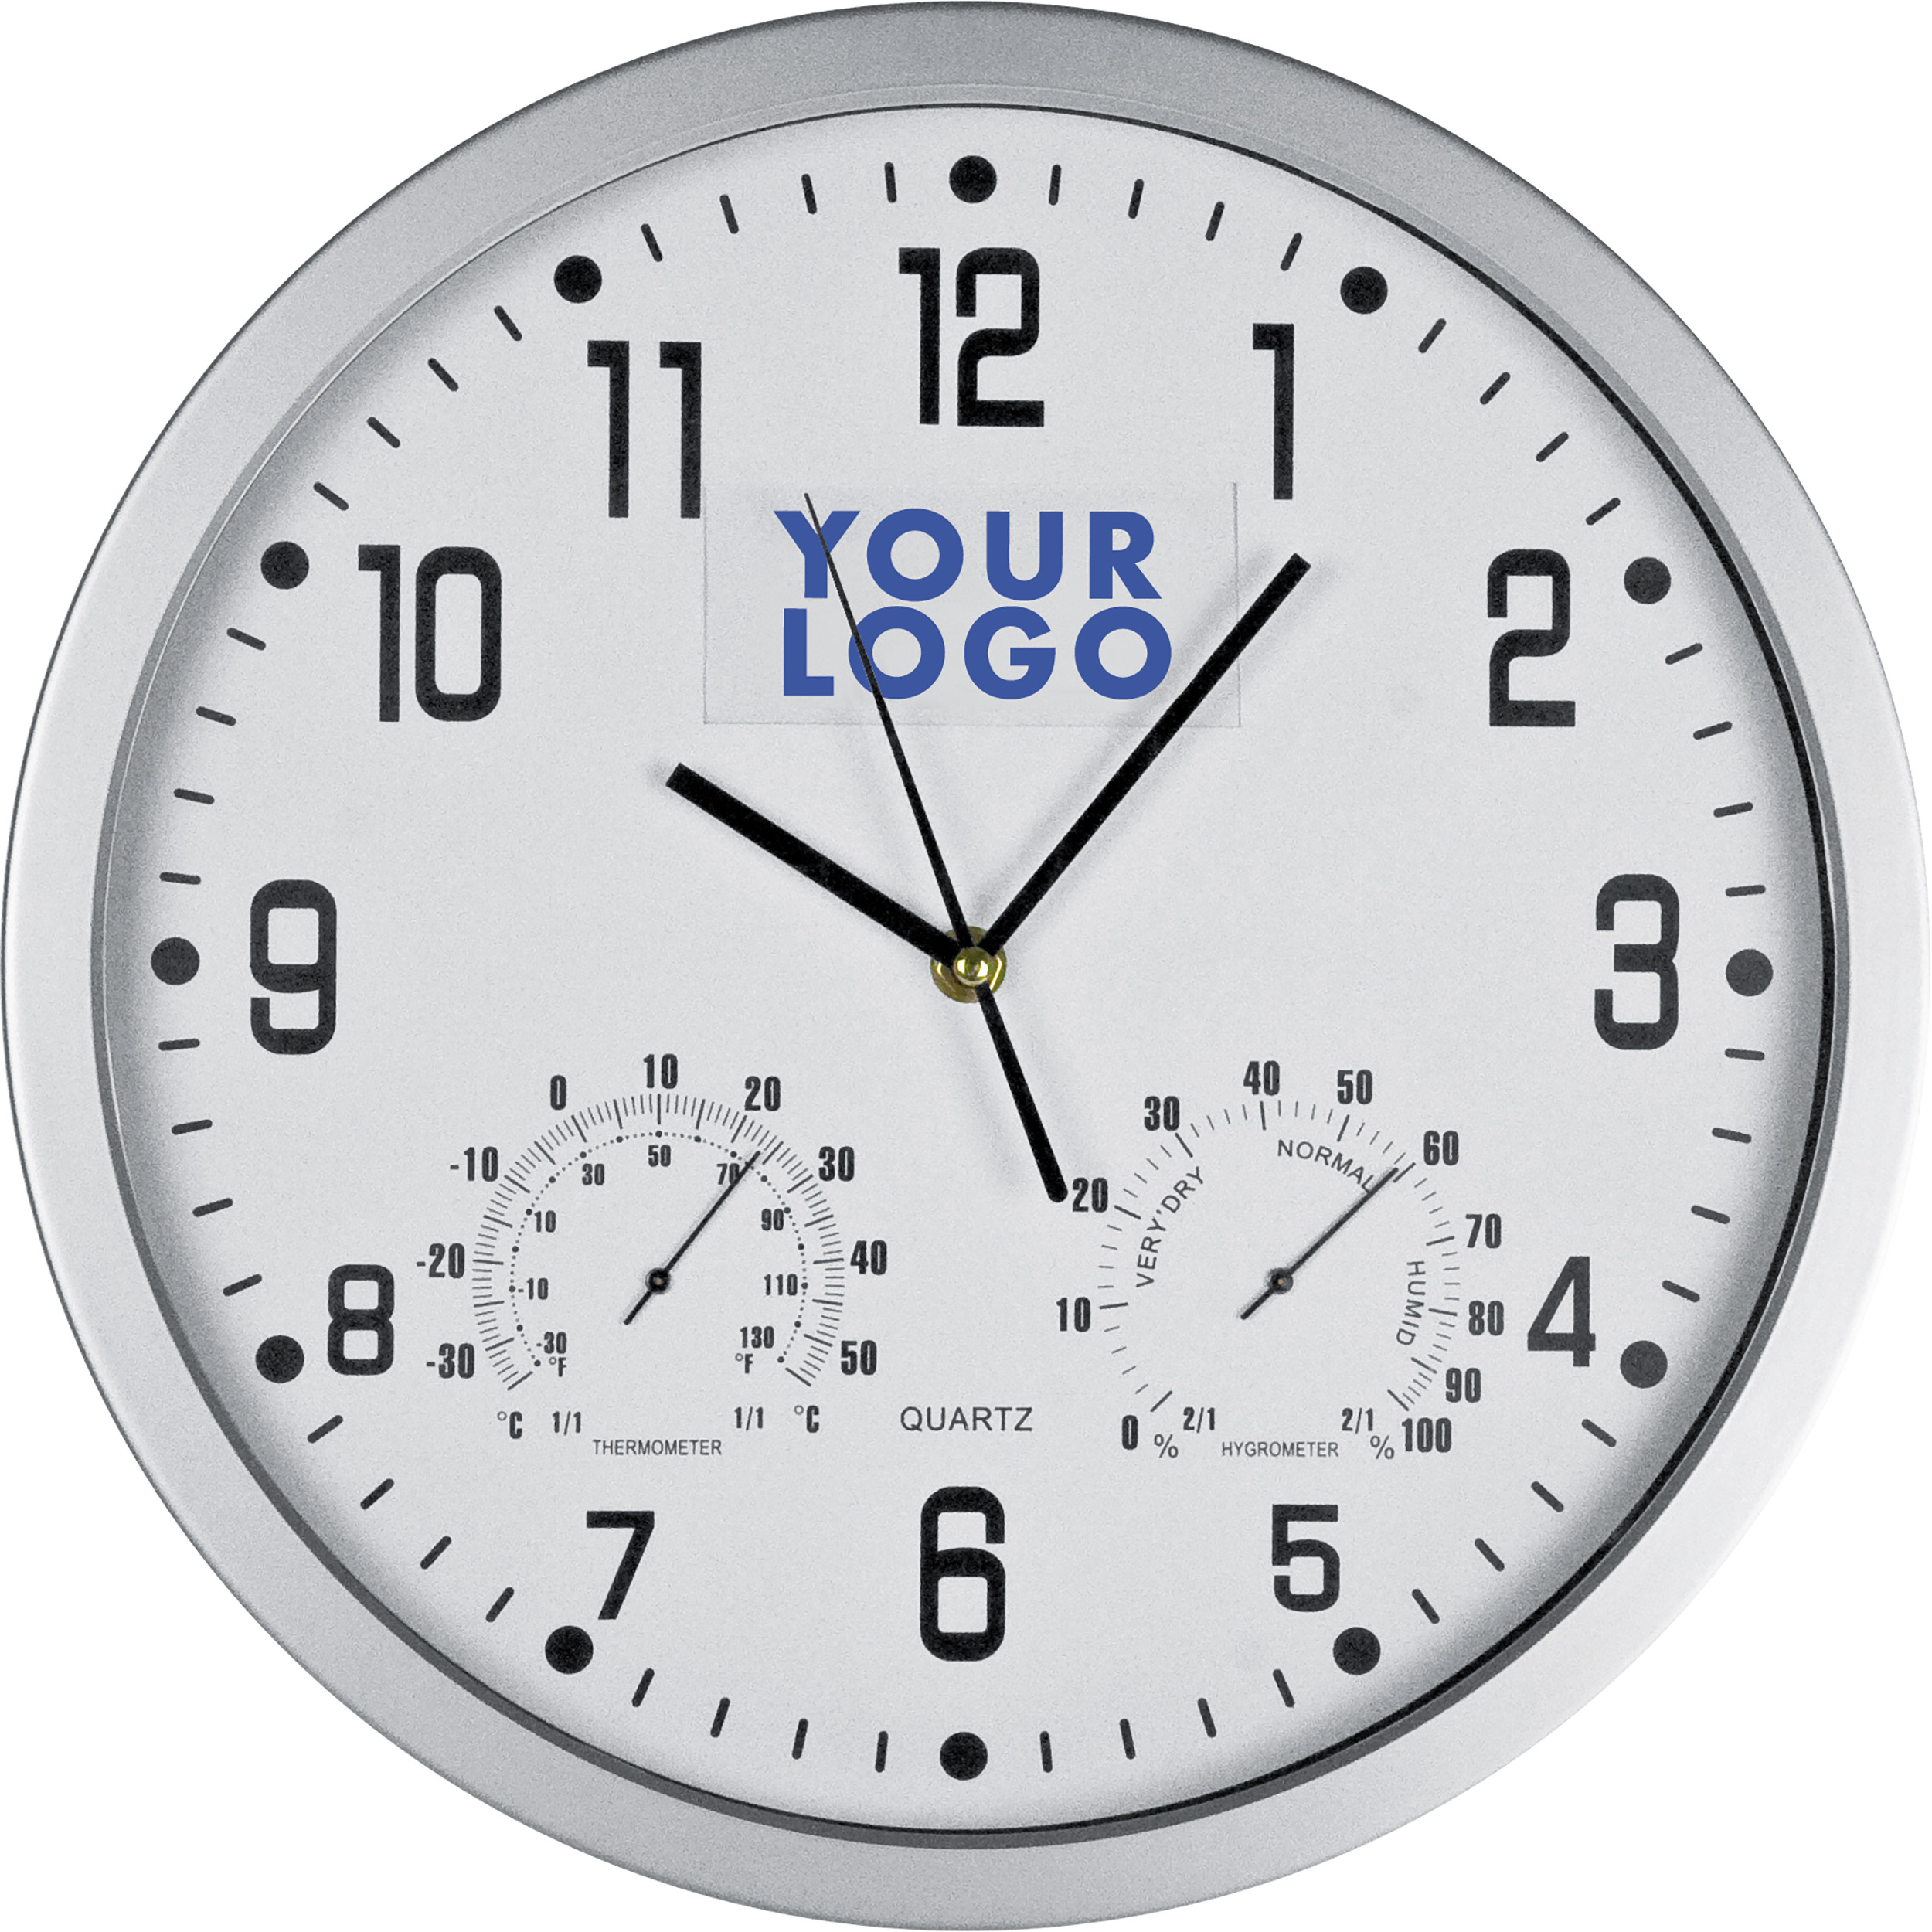 Настенные часы уф. Часы настенные Tempus fugit. Часы настенные Insert 2, белые. Часы настенные Масма Олимп с термометром и гигрометром. Часы настенные с термометром и гигрометром b&s SHC-301 CSP (W).